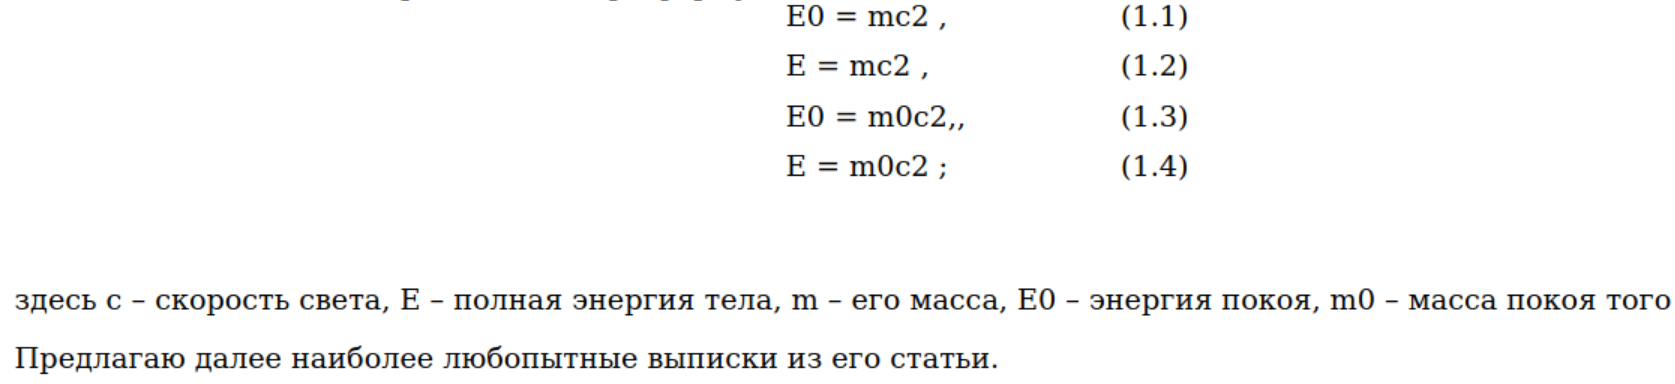 Вариации формулы Эйнштейна